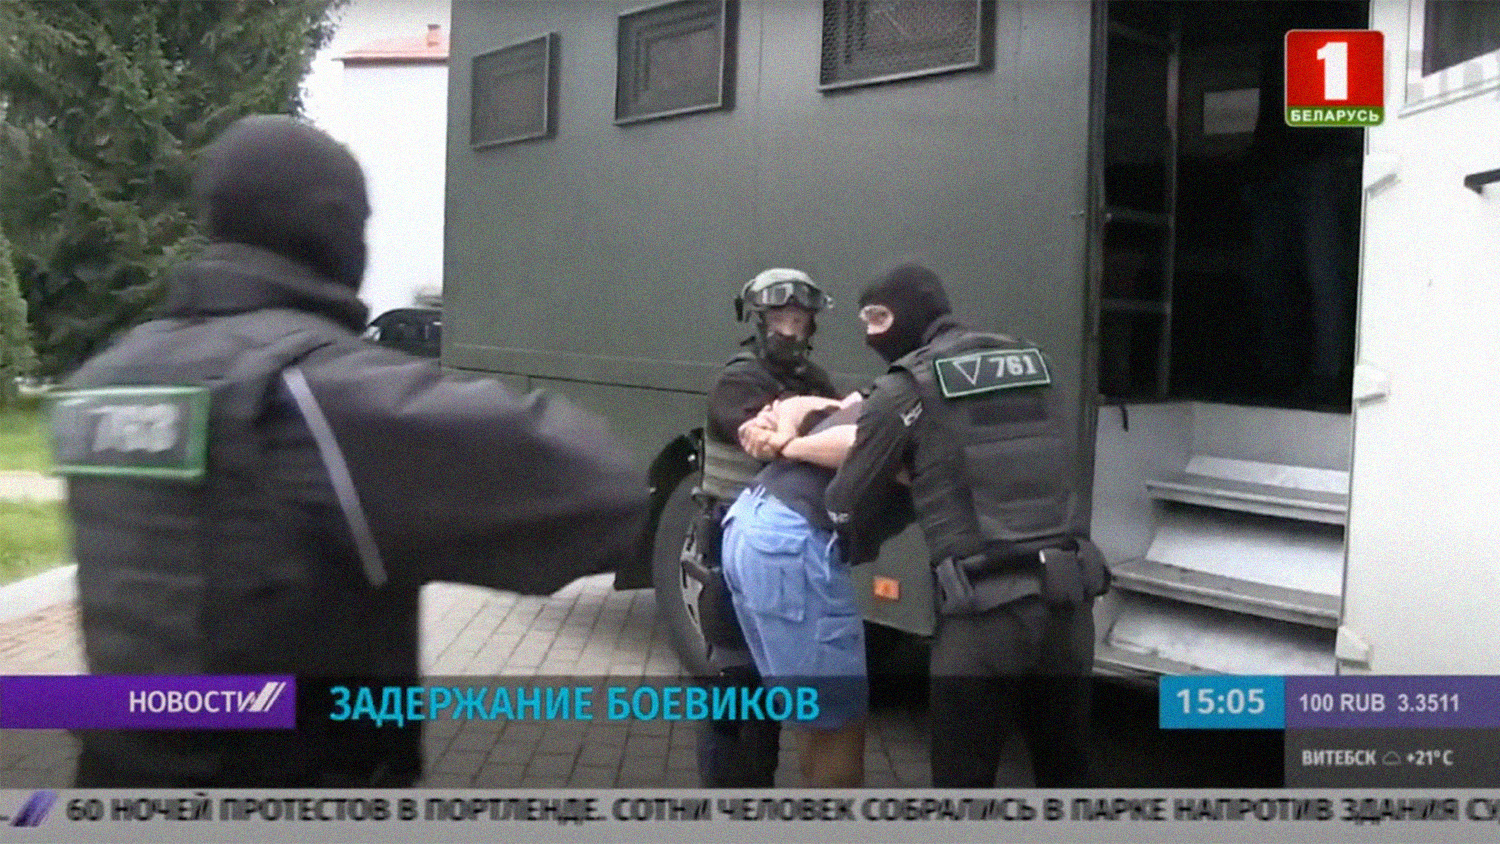 Скриншот видеосюжета телеканала "Беларусь 1" с задержанием боевиков.